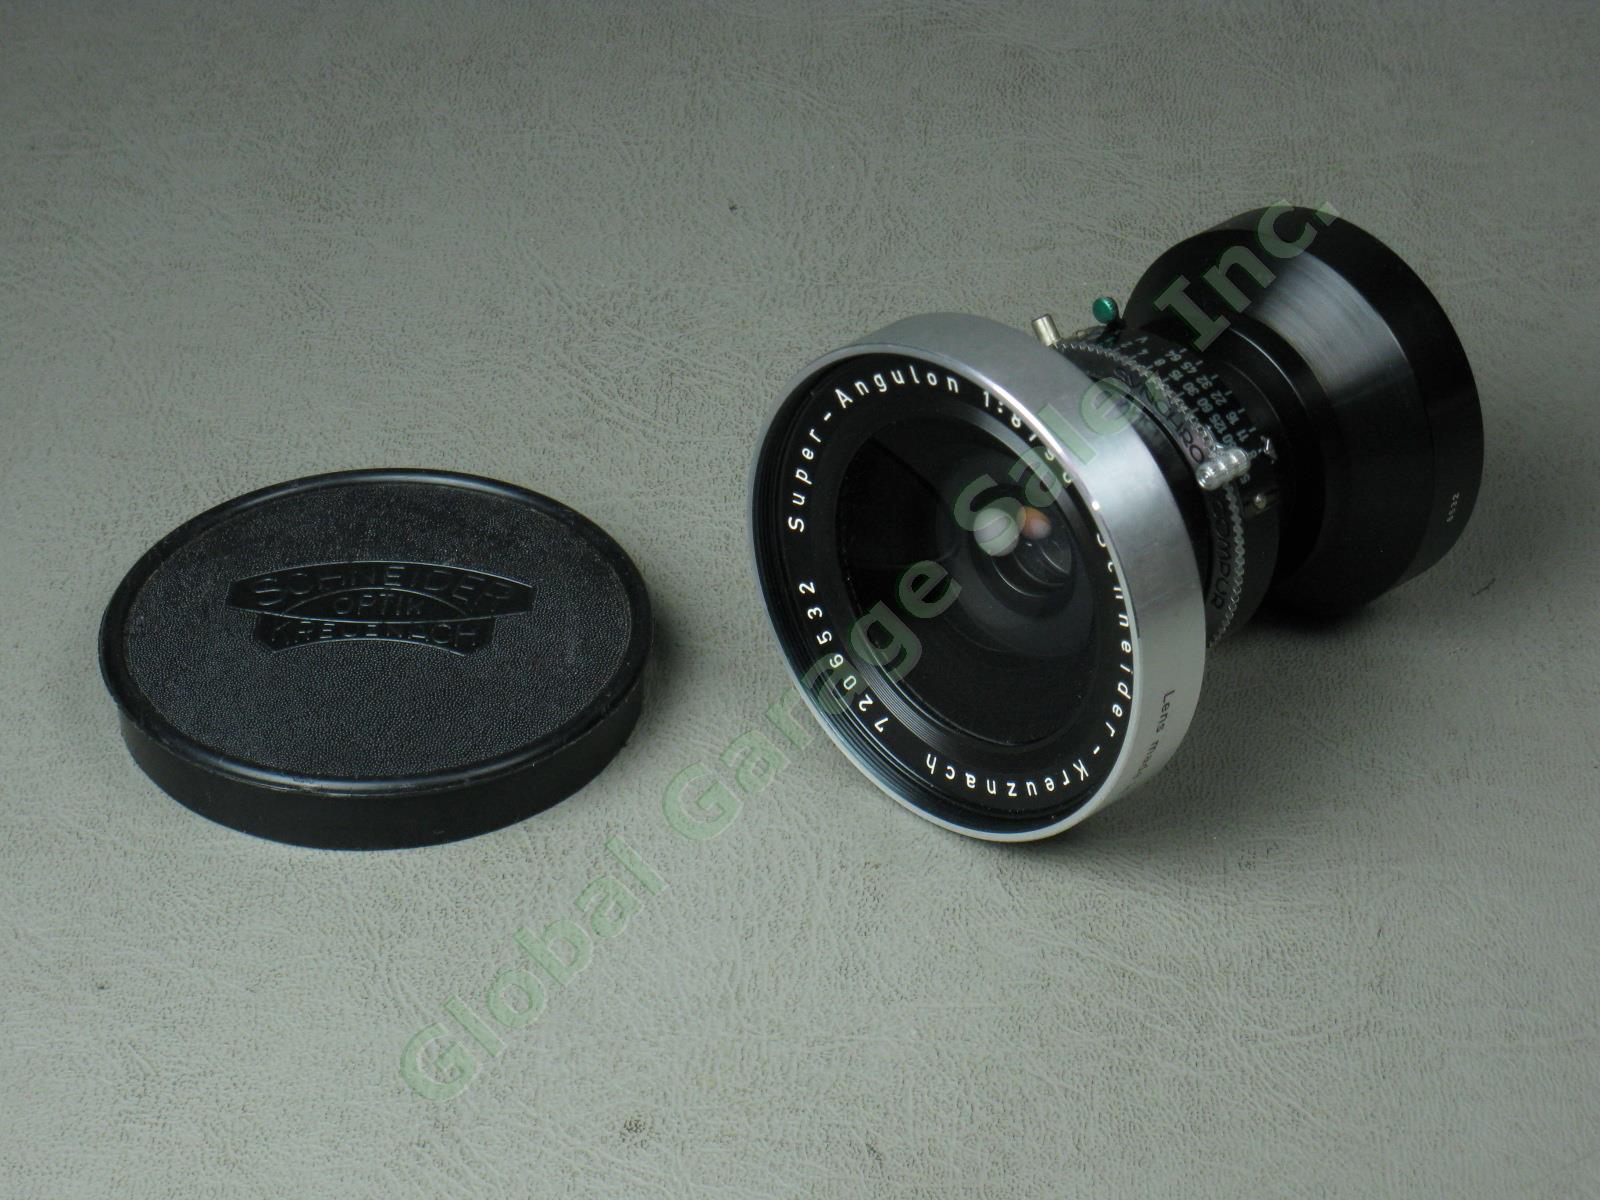 Schneider-Kreuznach Super-Angulon 1:8 f/8 90mm Camera Lens Serial #7206932 NR!